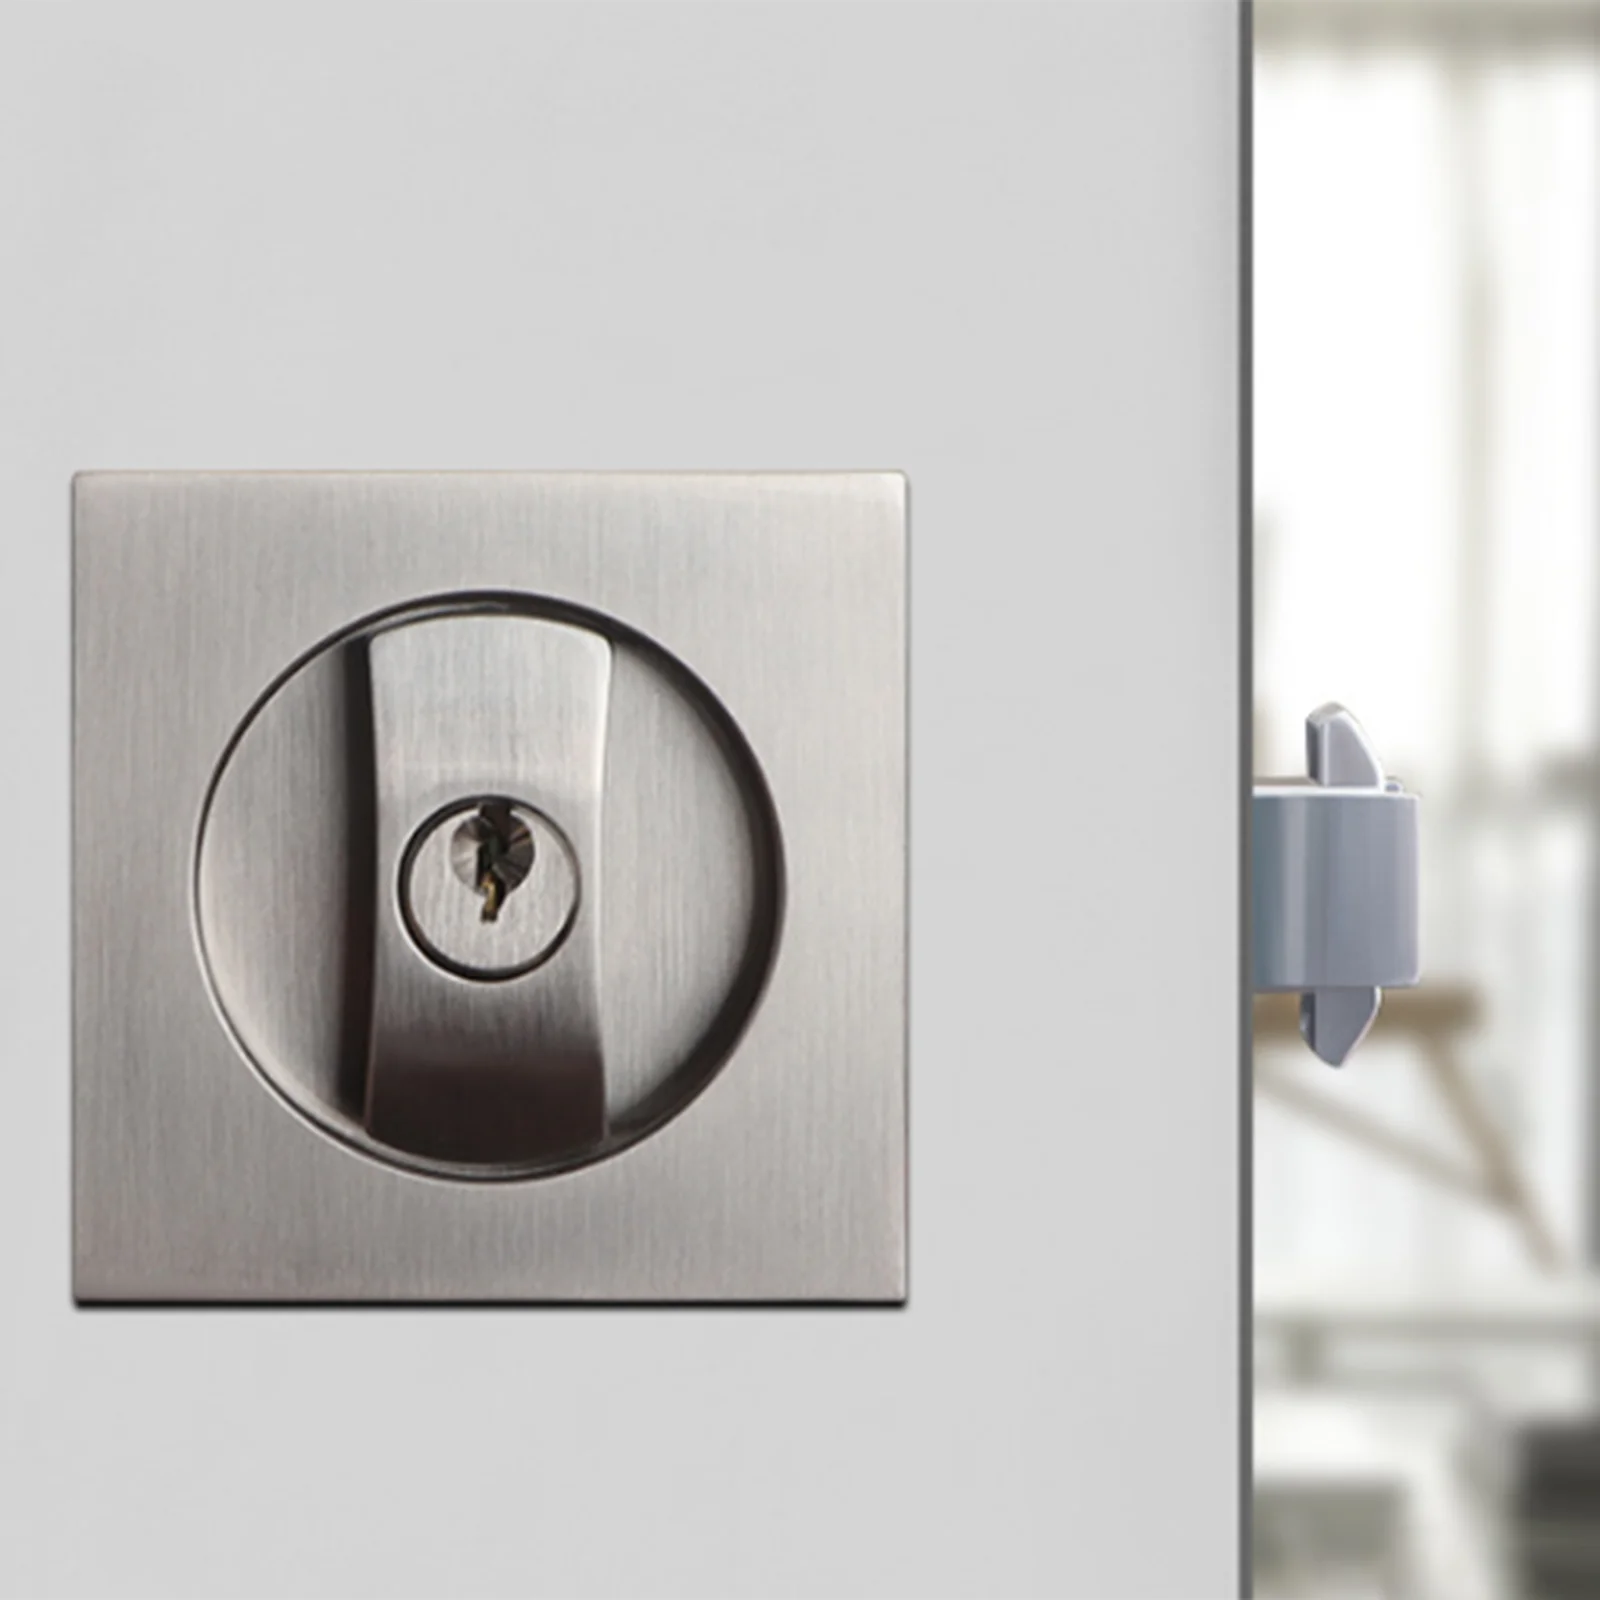 

Square Sliding Door Lock Embedded Sliding Door Pocket Door Lock With Key Home Anti Theft Security Invisible Door Locks